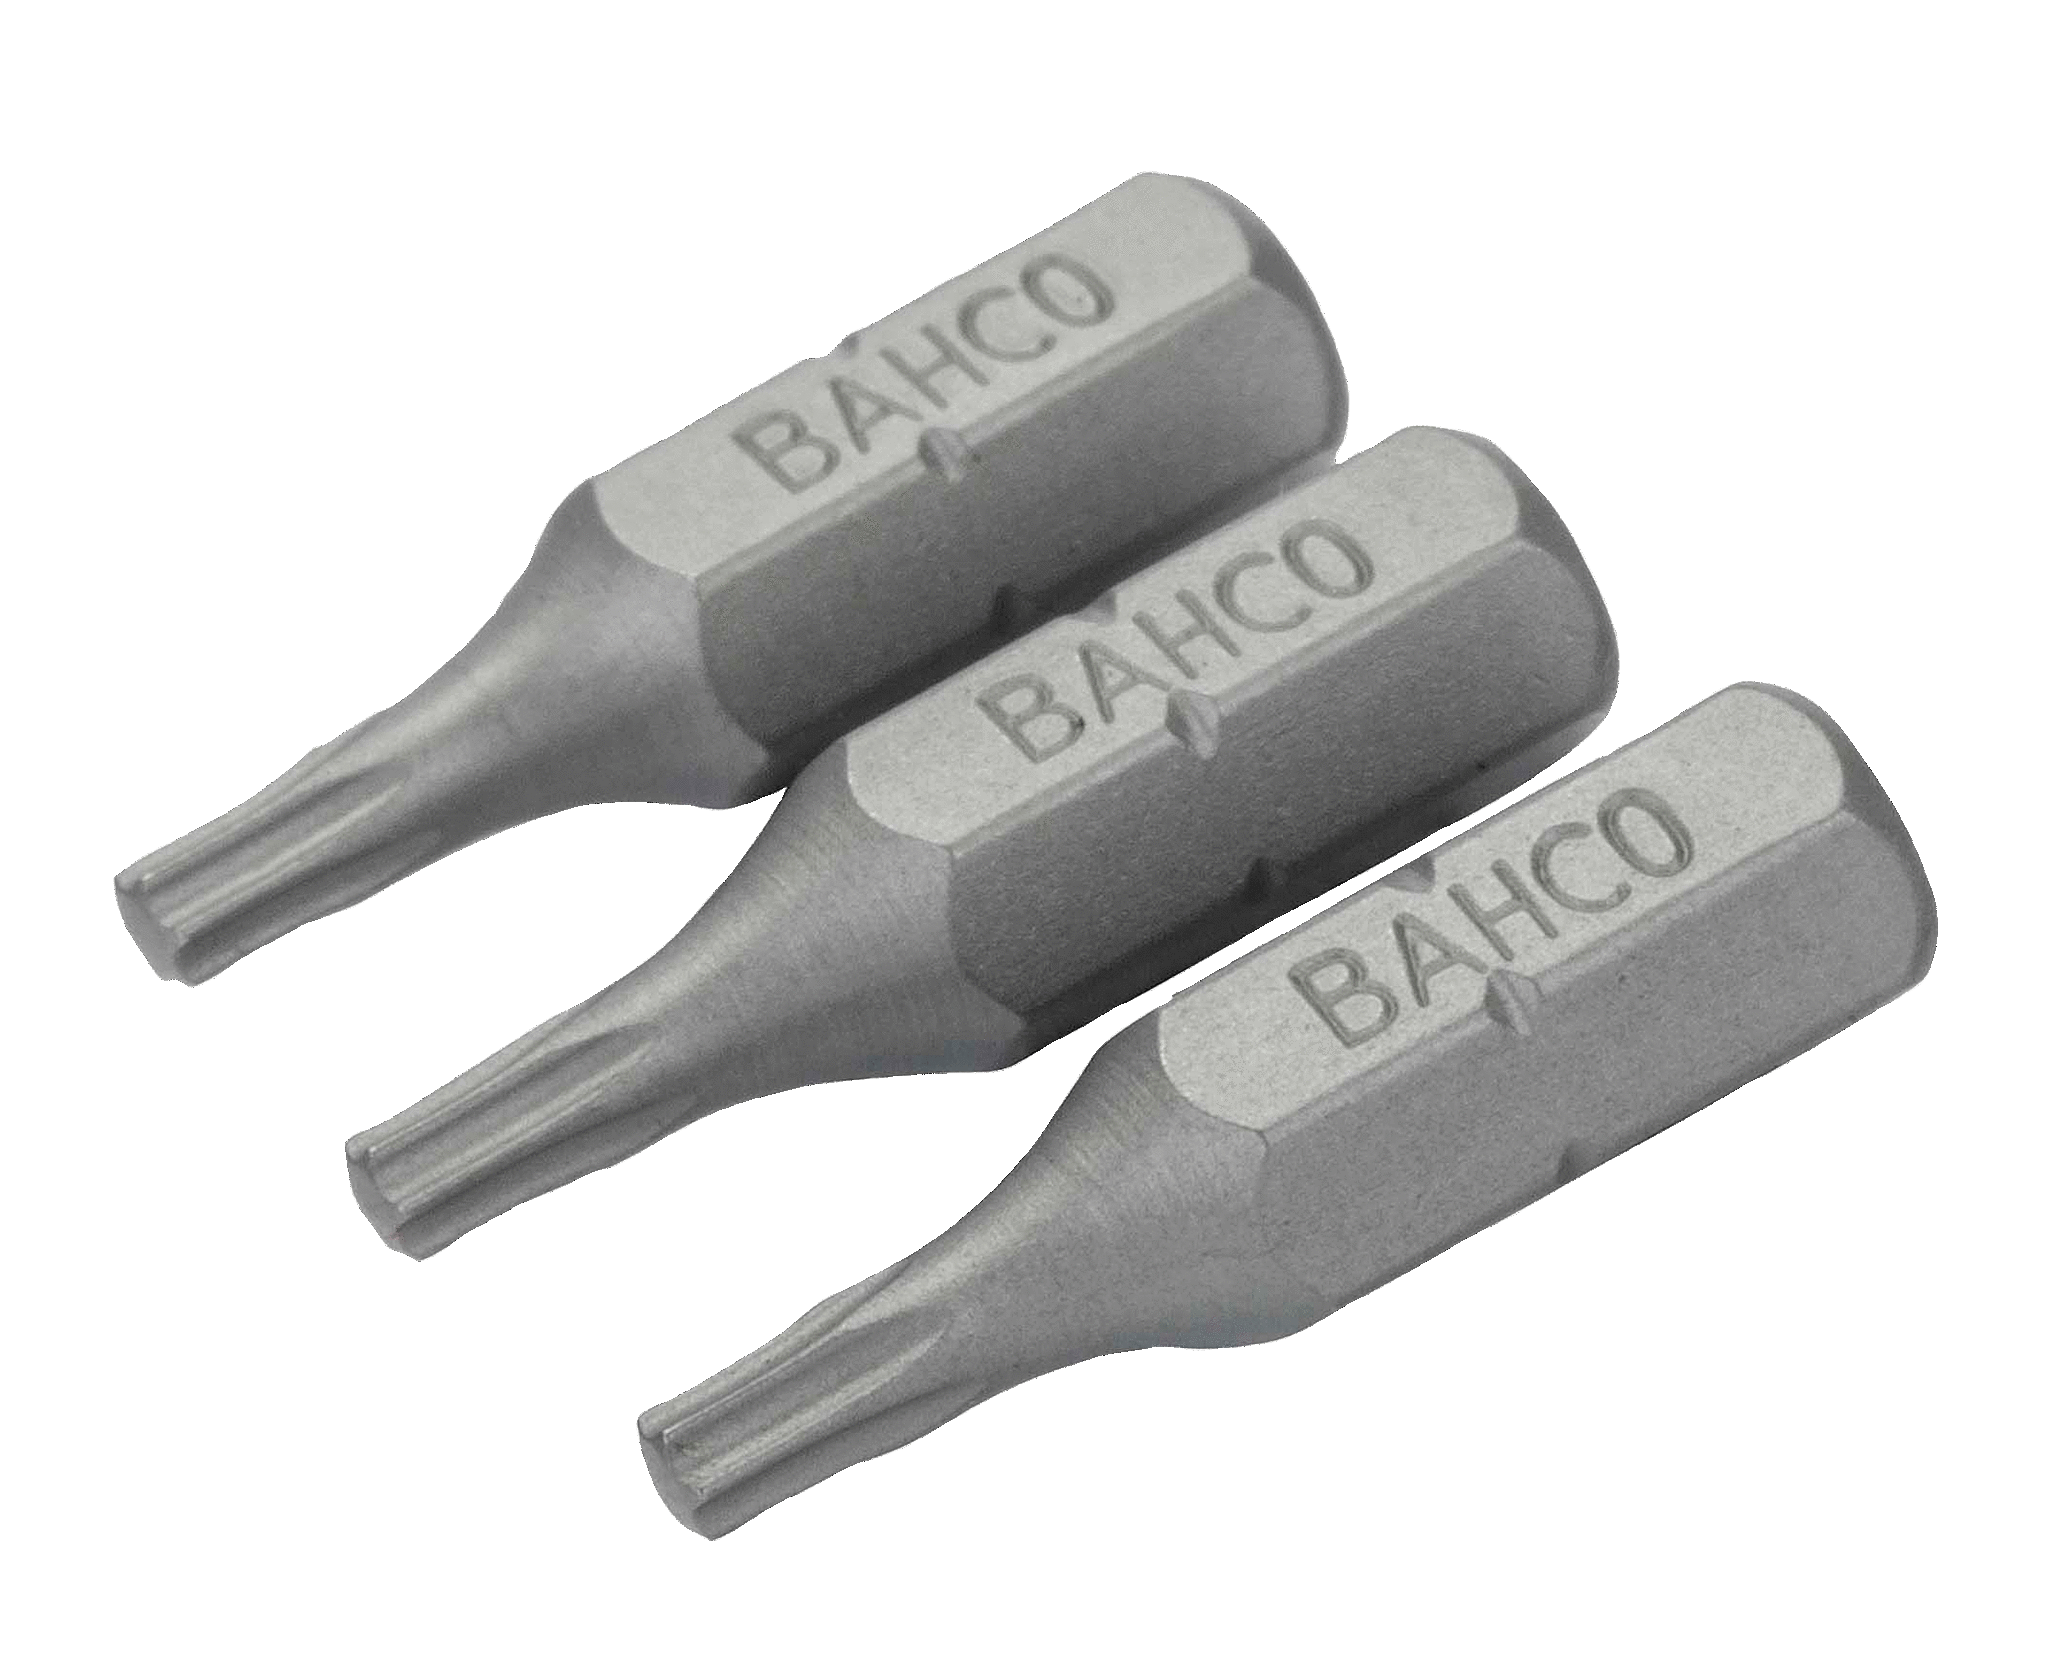 картинка Стандартные биты для отверток Torx®, 25 мм BAHCO 59S/T6-3P от магазина "Элит-инструмент"